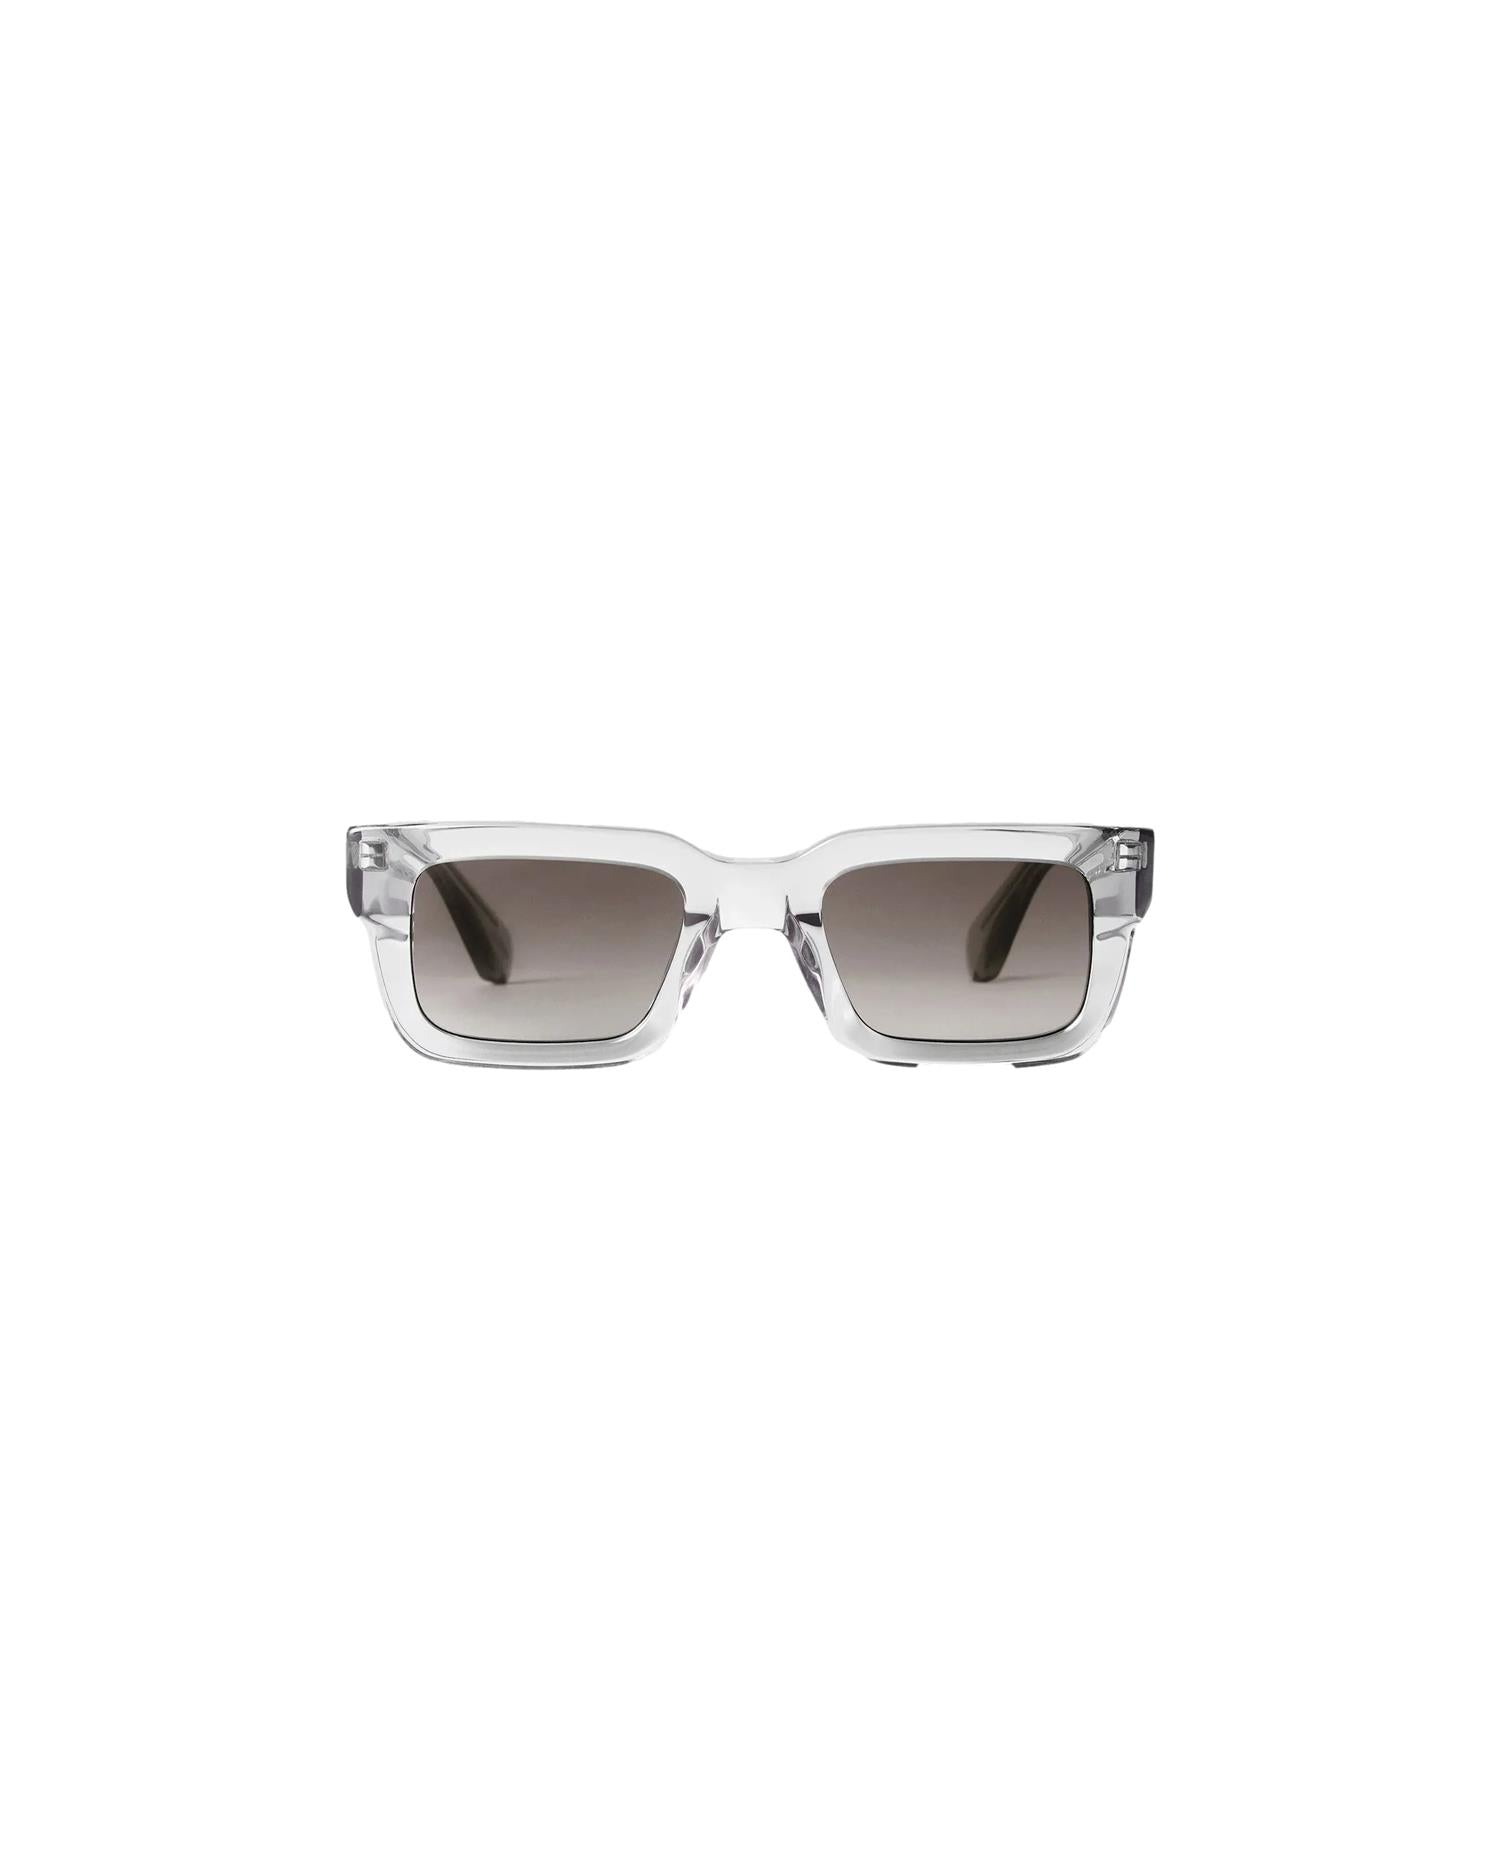 Chimi Eyewear 05 Grey Solbriller Grå - modostore.no